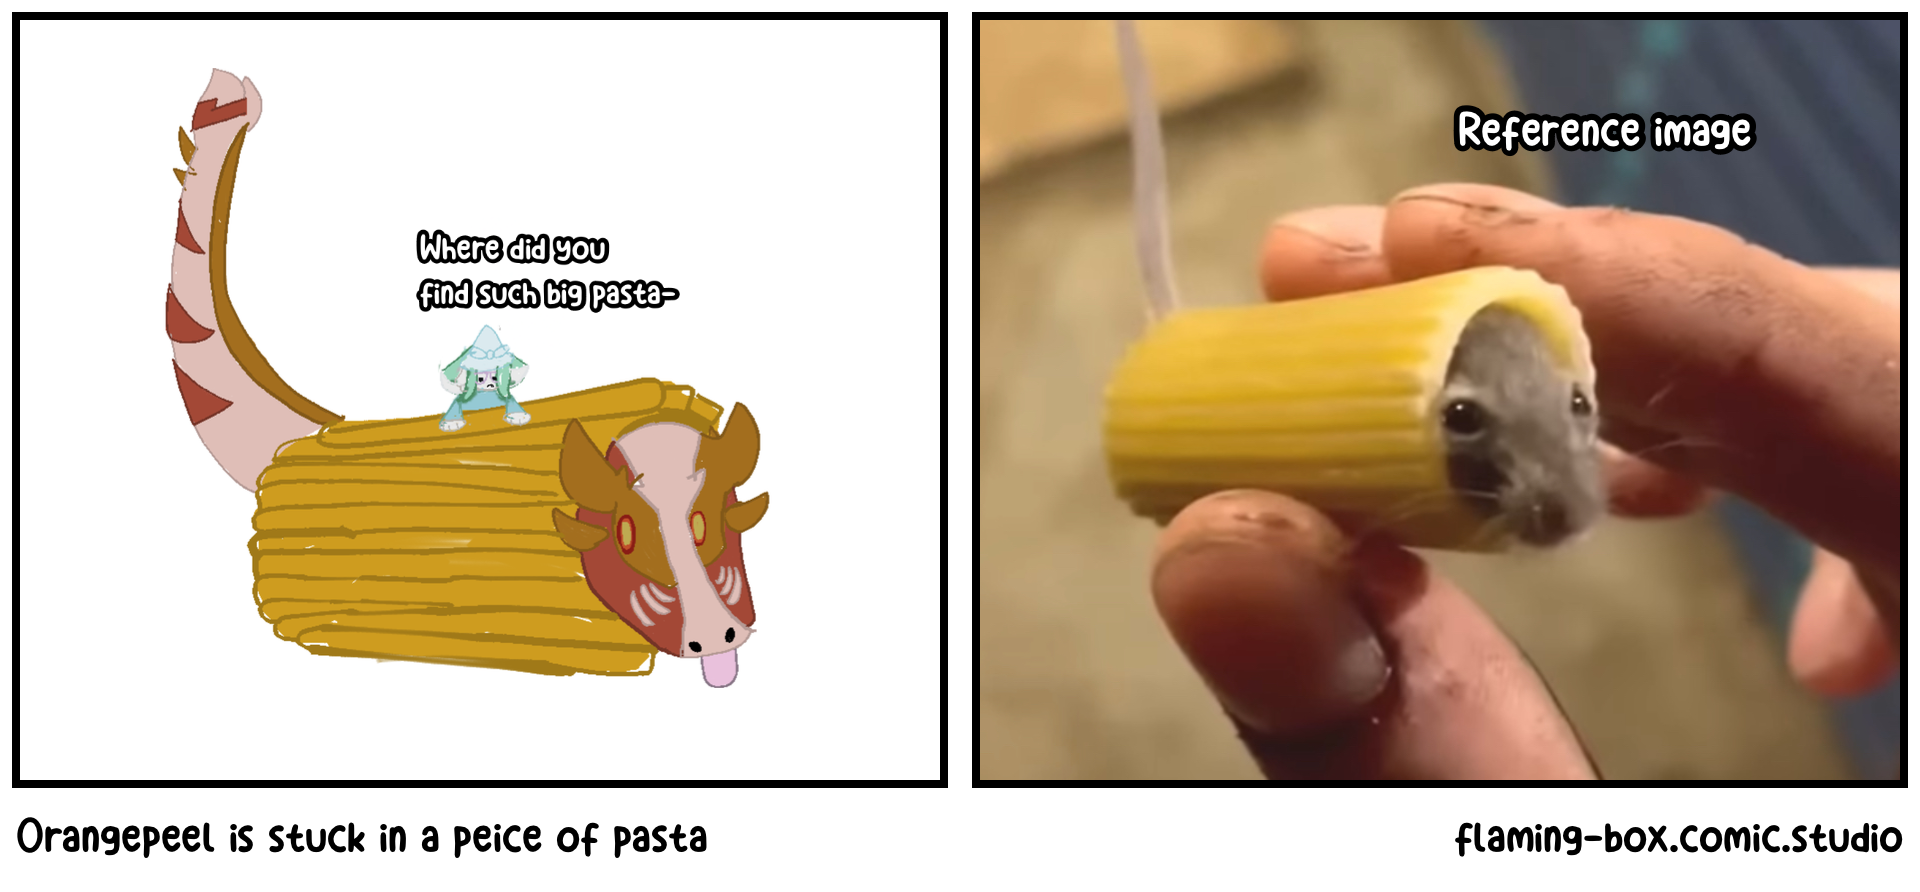 Orangepeel is stuck in a peice of pasta